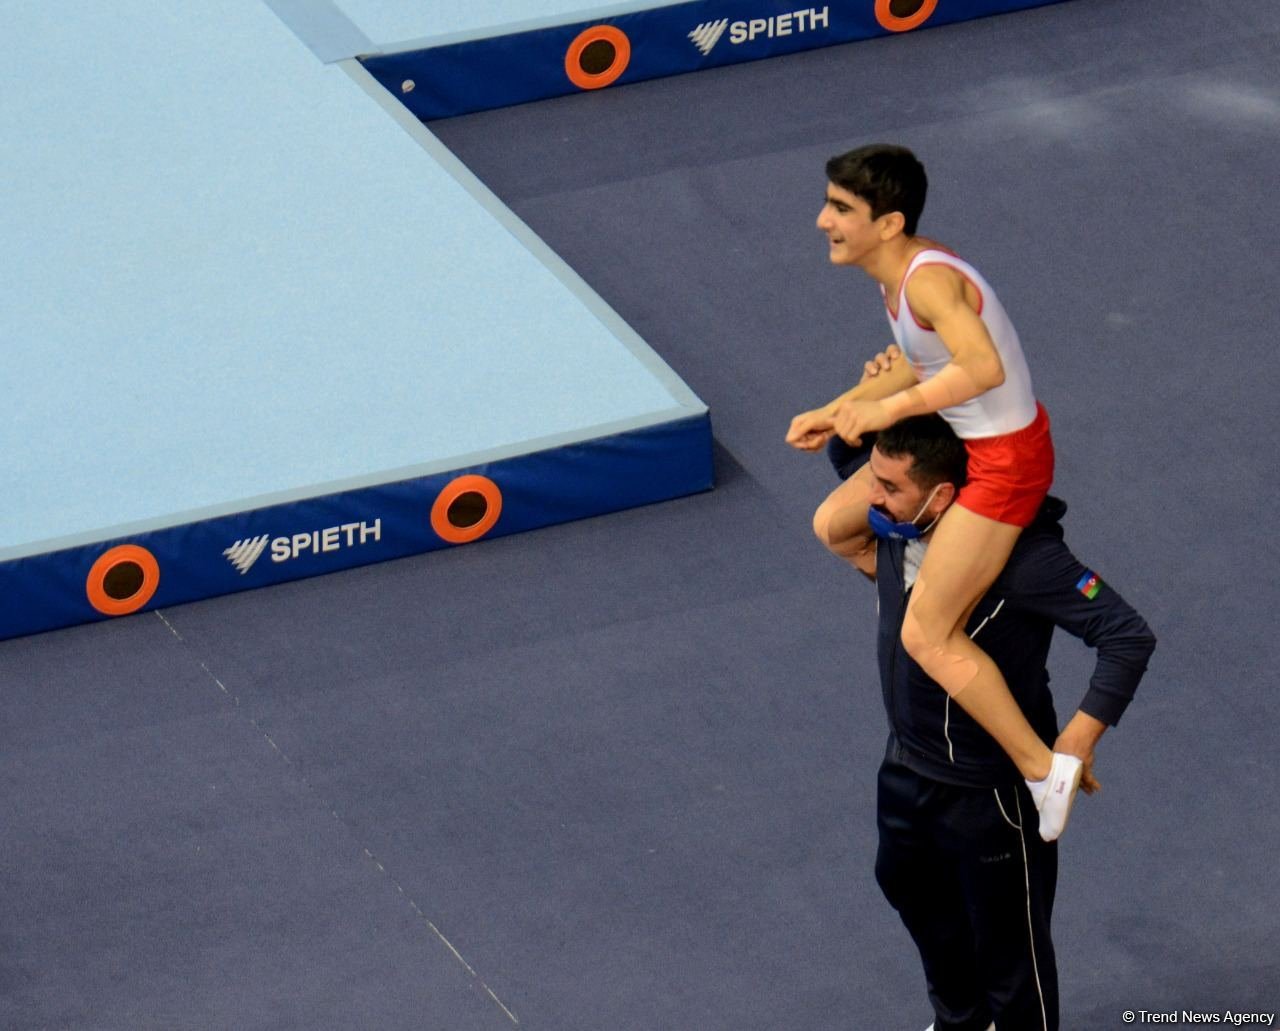 Azərbaycan gimnastı Batut Gimnastikası üzrə 28-ci Dünya Yaş Qrupları Yarışlarında qızıl medal qazanıb